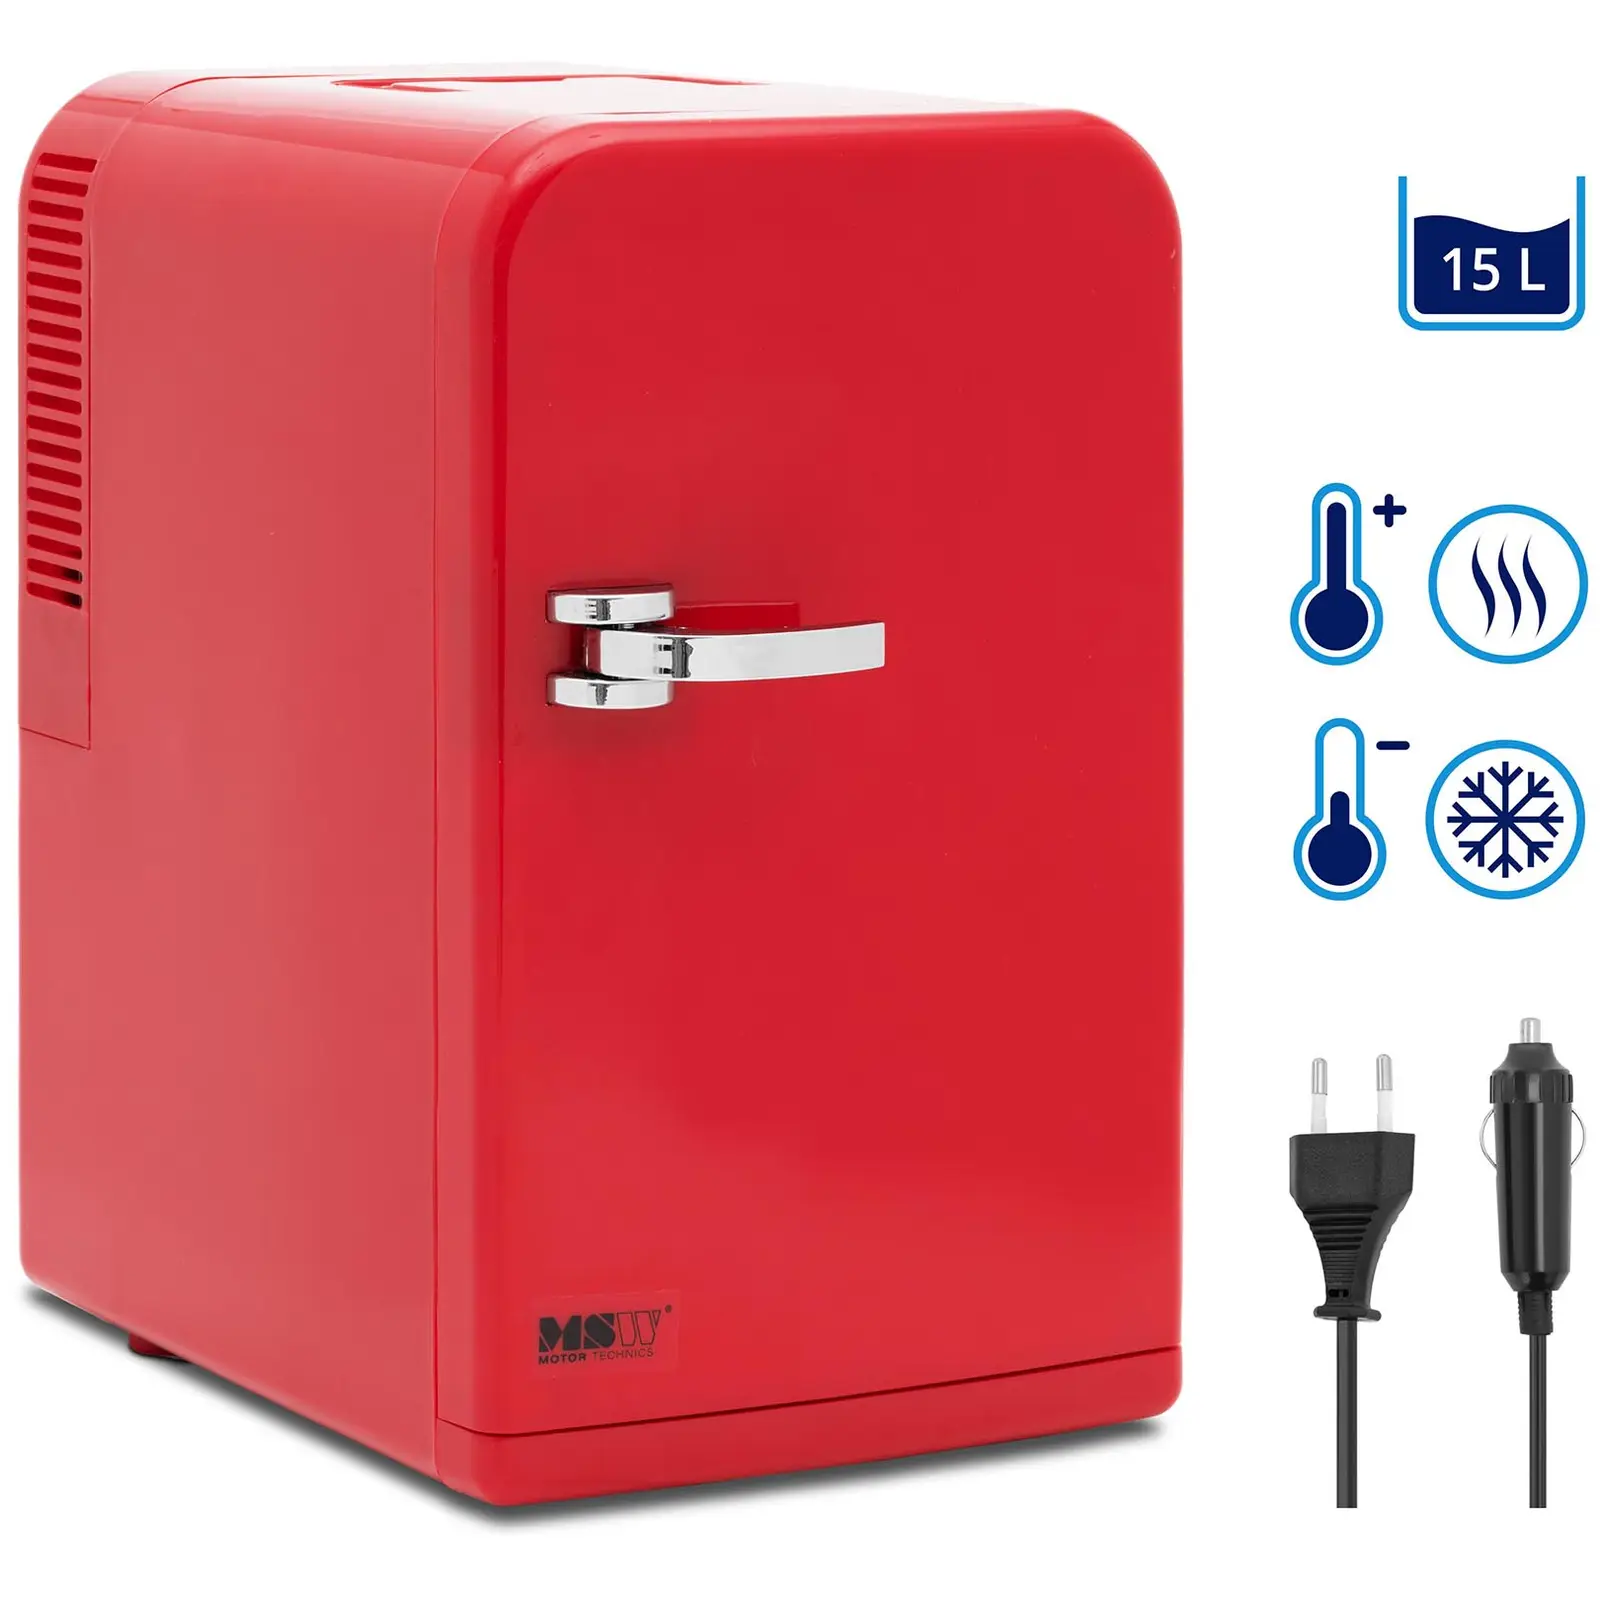 Mini frigo 12 V / 230 V - 2 in 1 con funzione di mantenimento del calore - 15 L - Rosso